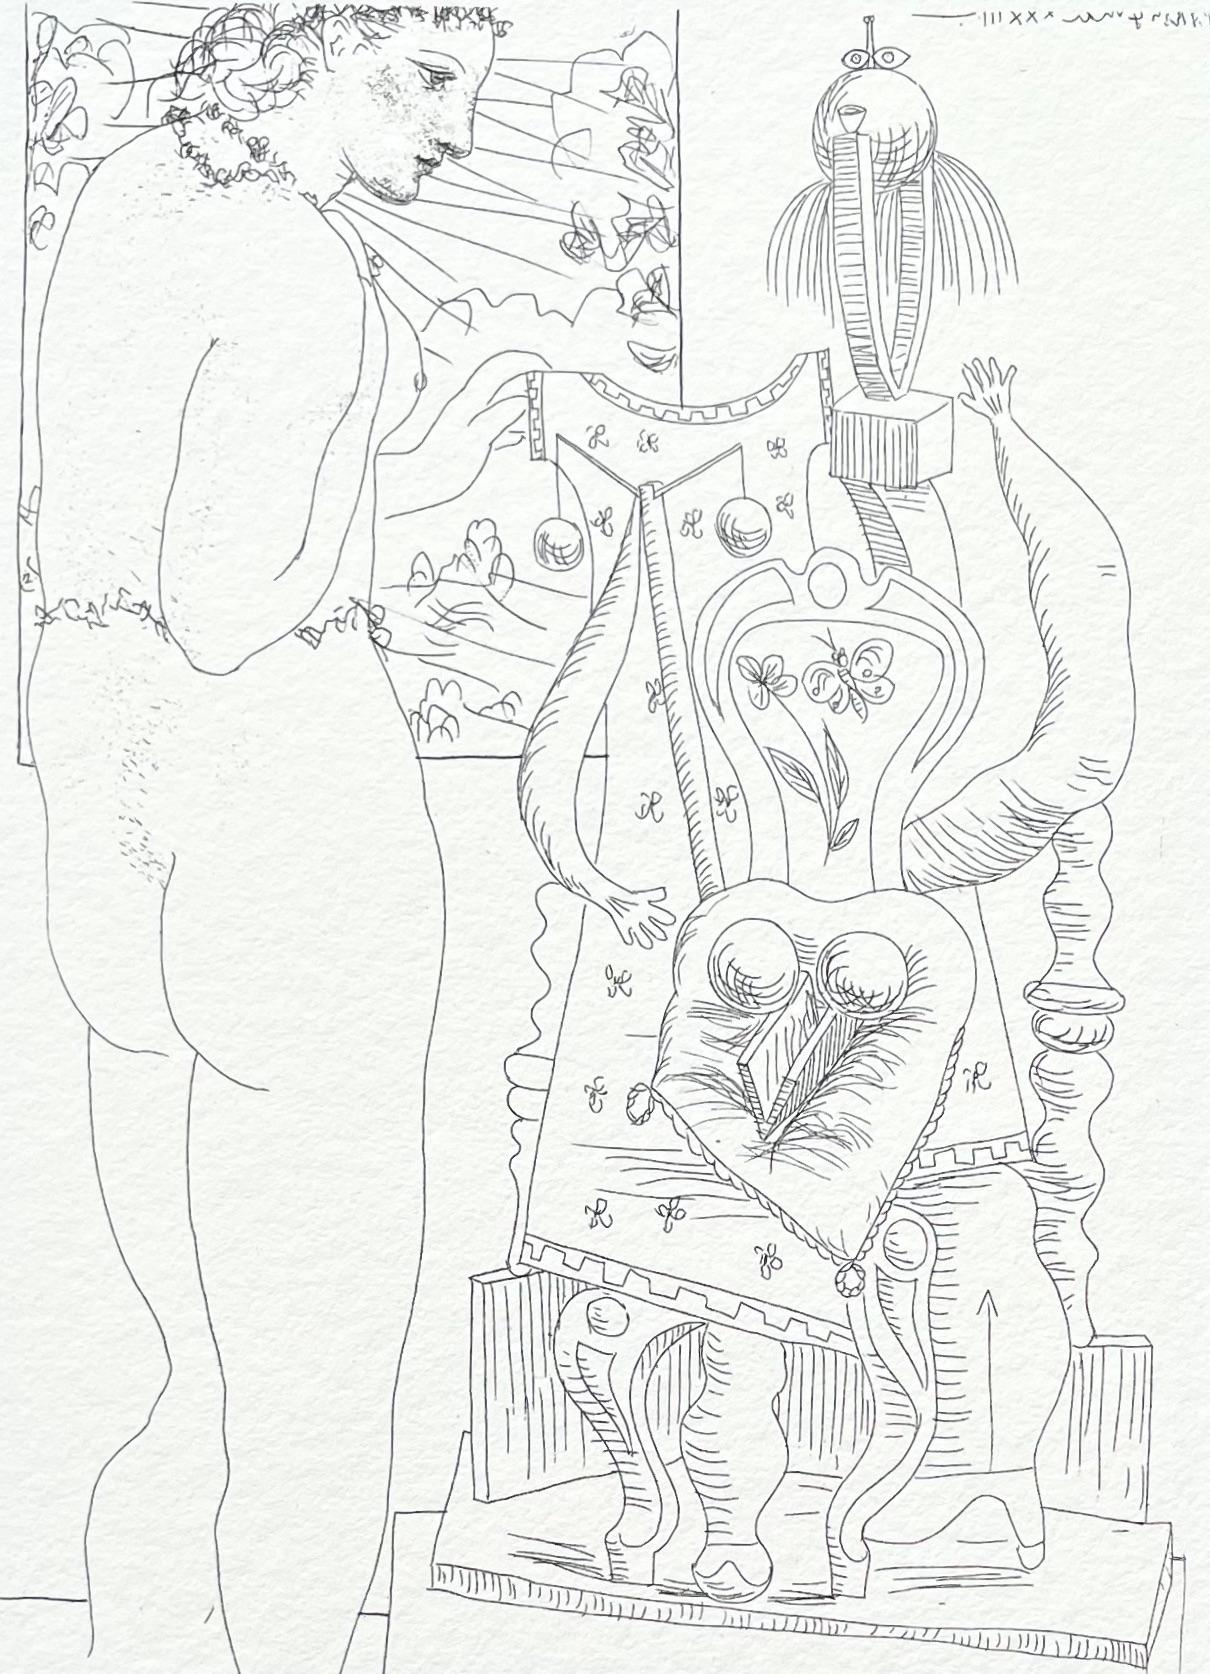 Picasso, Marie-Thérèse considérant son Effigie surréaliste sculptée (d'après)